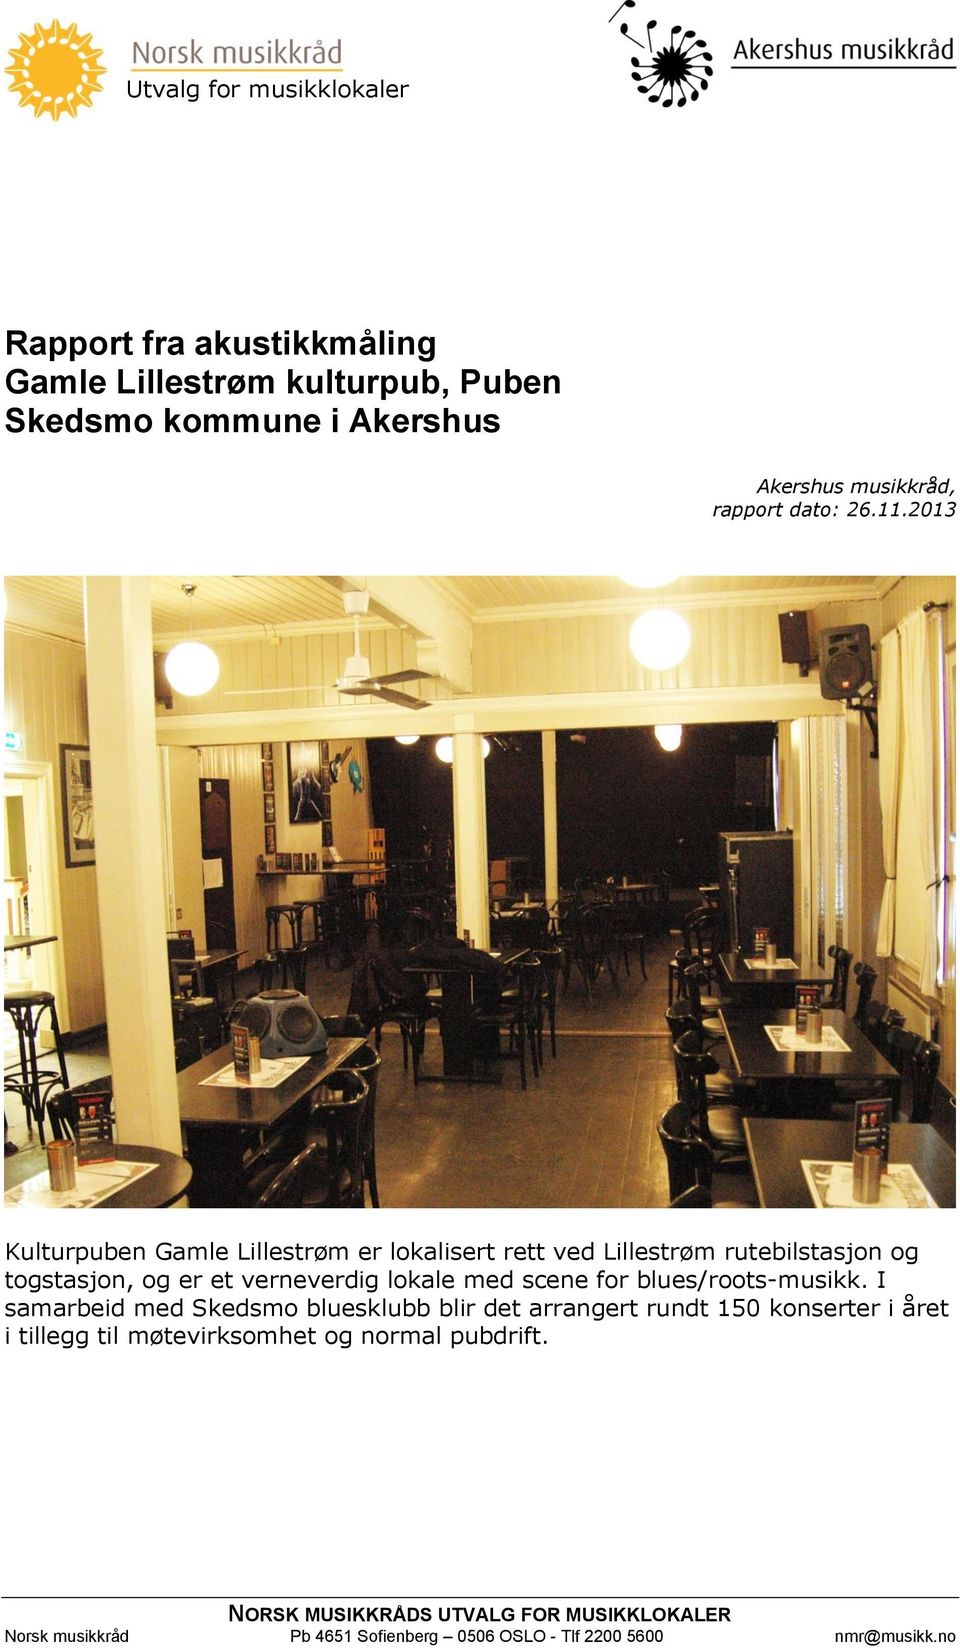 2013 Kulturpuben Gamle Lillestrøm er lokalisert rett ved Lillestrøm rutebilstasjon og togstasjon, og er et verneverdig lokale med scene for